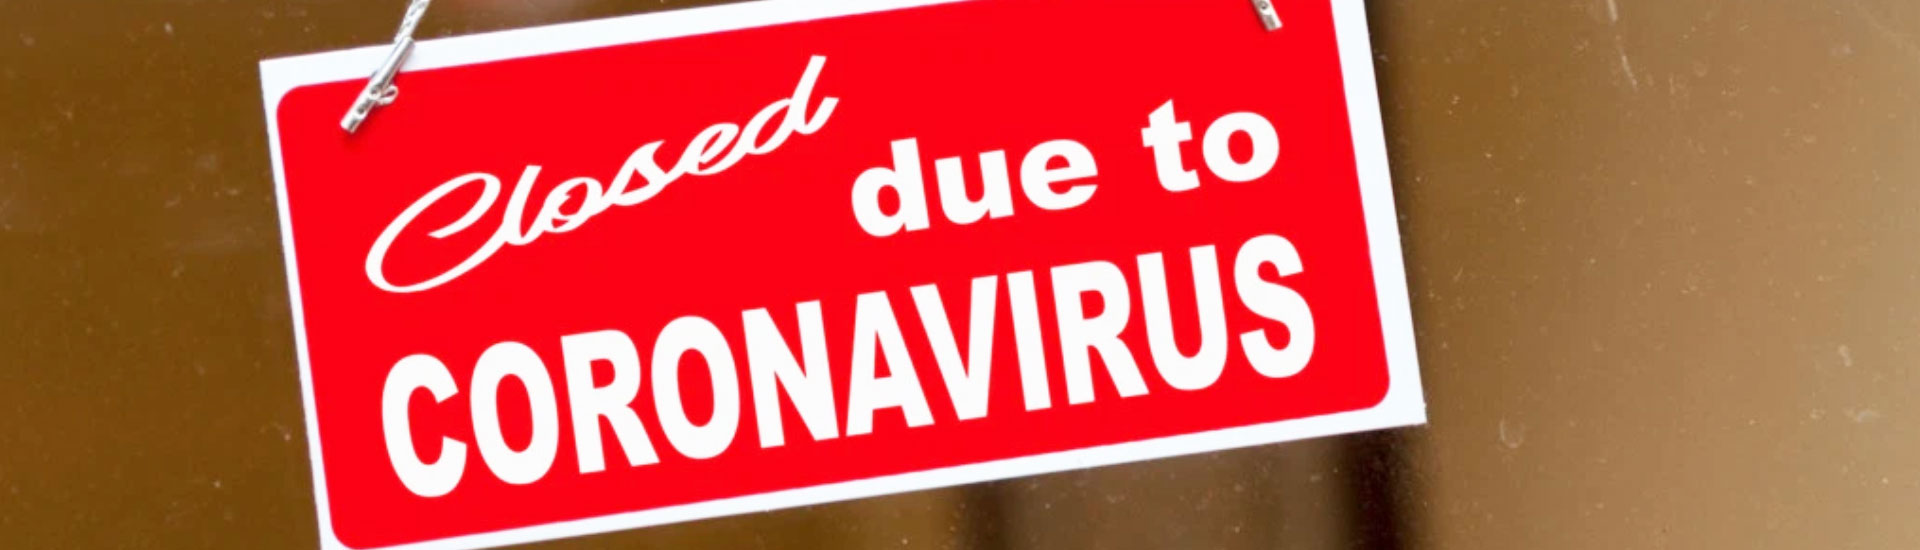 Coronavirus Signage